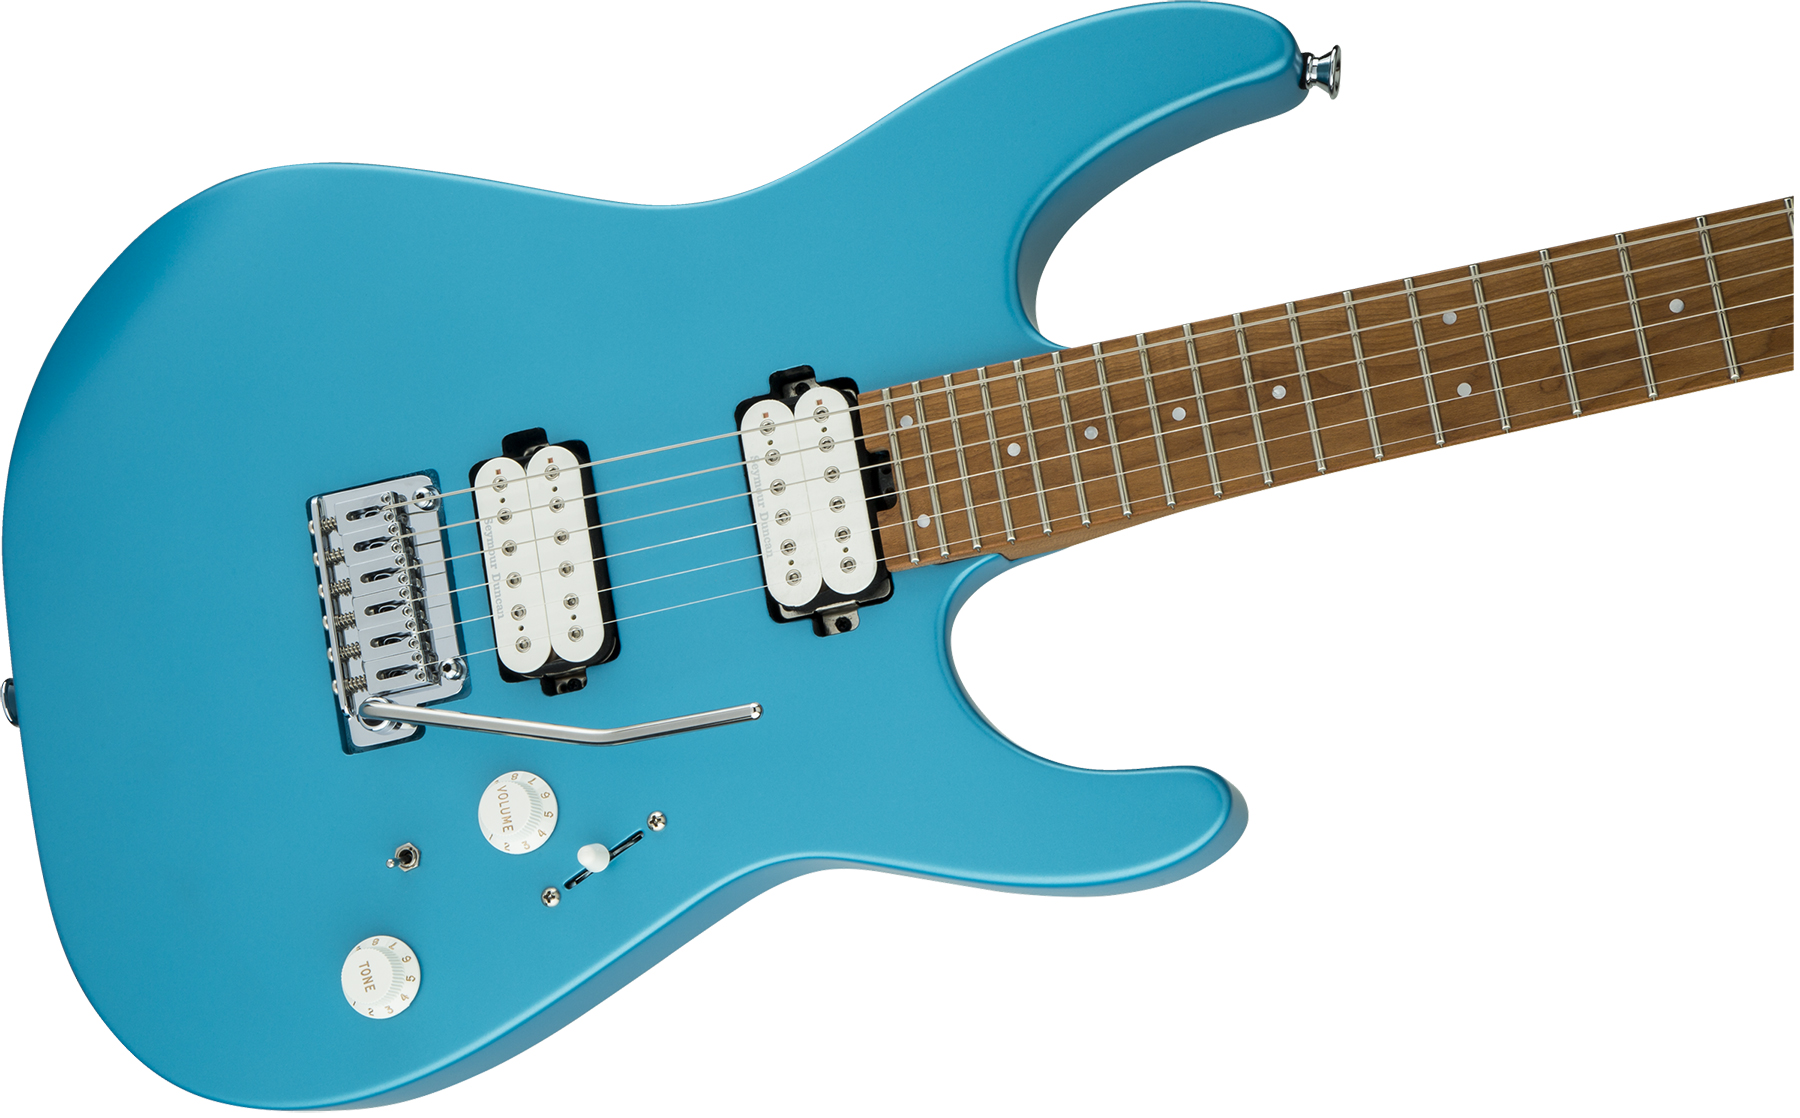 Charvel Pro-mod Dk24 Hh 2pt Cm Seymour Duncan Trem Mn - Matte Blue Frost - E-Gitarre in Str-Form - Variation 2